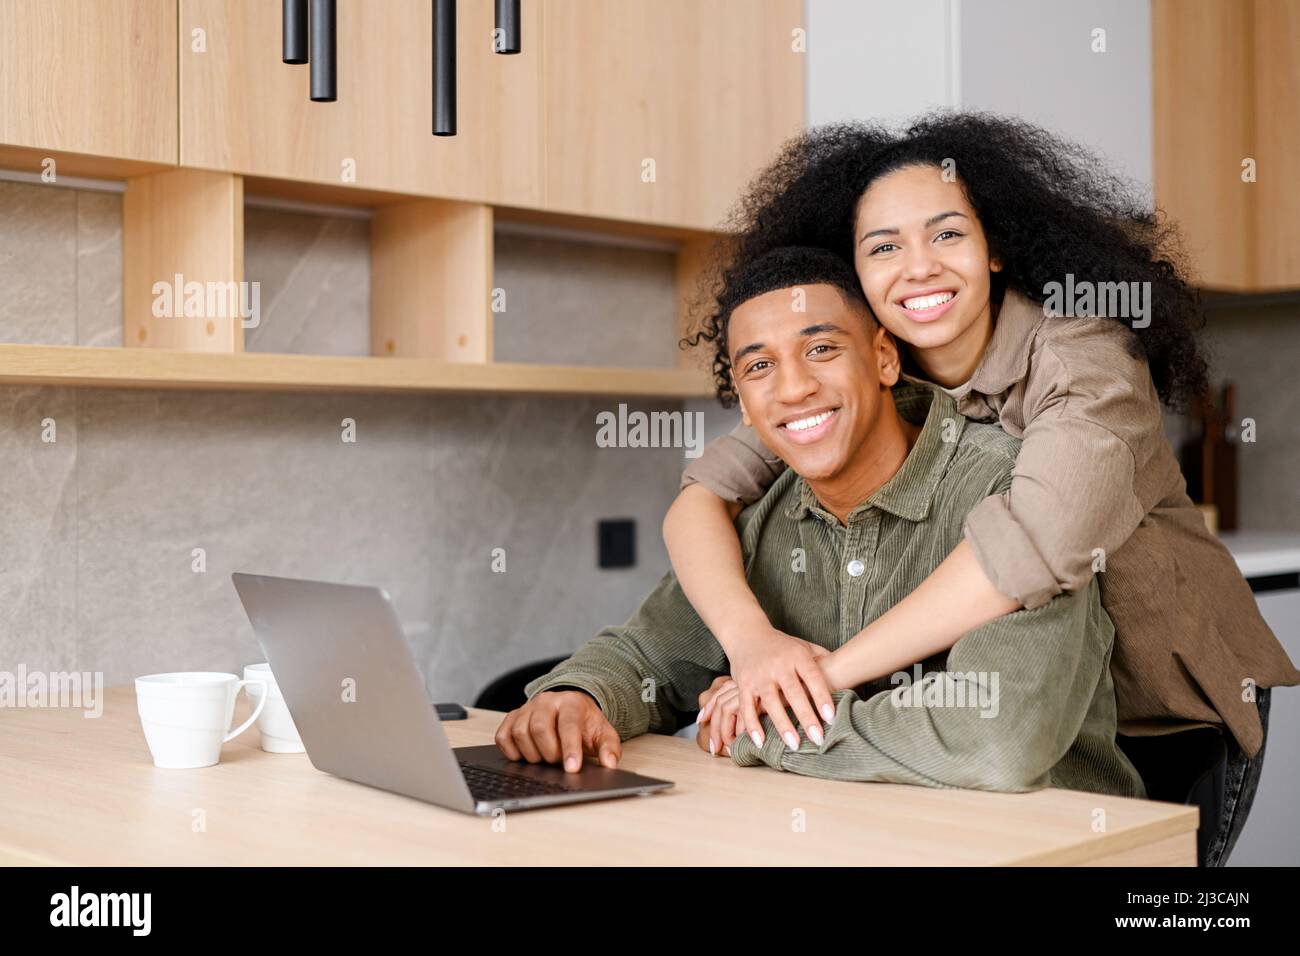 Mujer biracial abrazando al hombre desde atrás. Mezcla de etnicidad pareja relajarse en el nuevo apartamento en casa mientras navega por Internet en el ordenador portátil. Muestre el amor diario en el concepto más simple de maneras Foto de stock